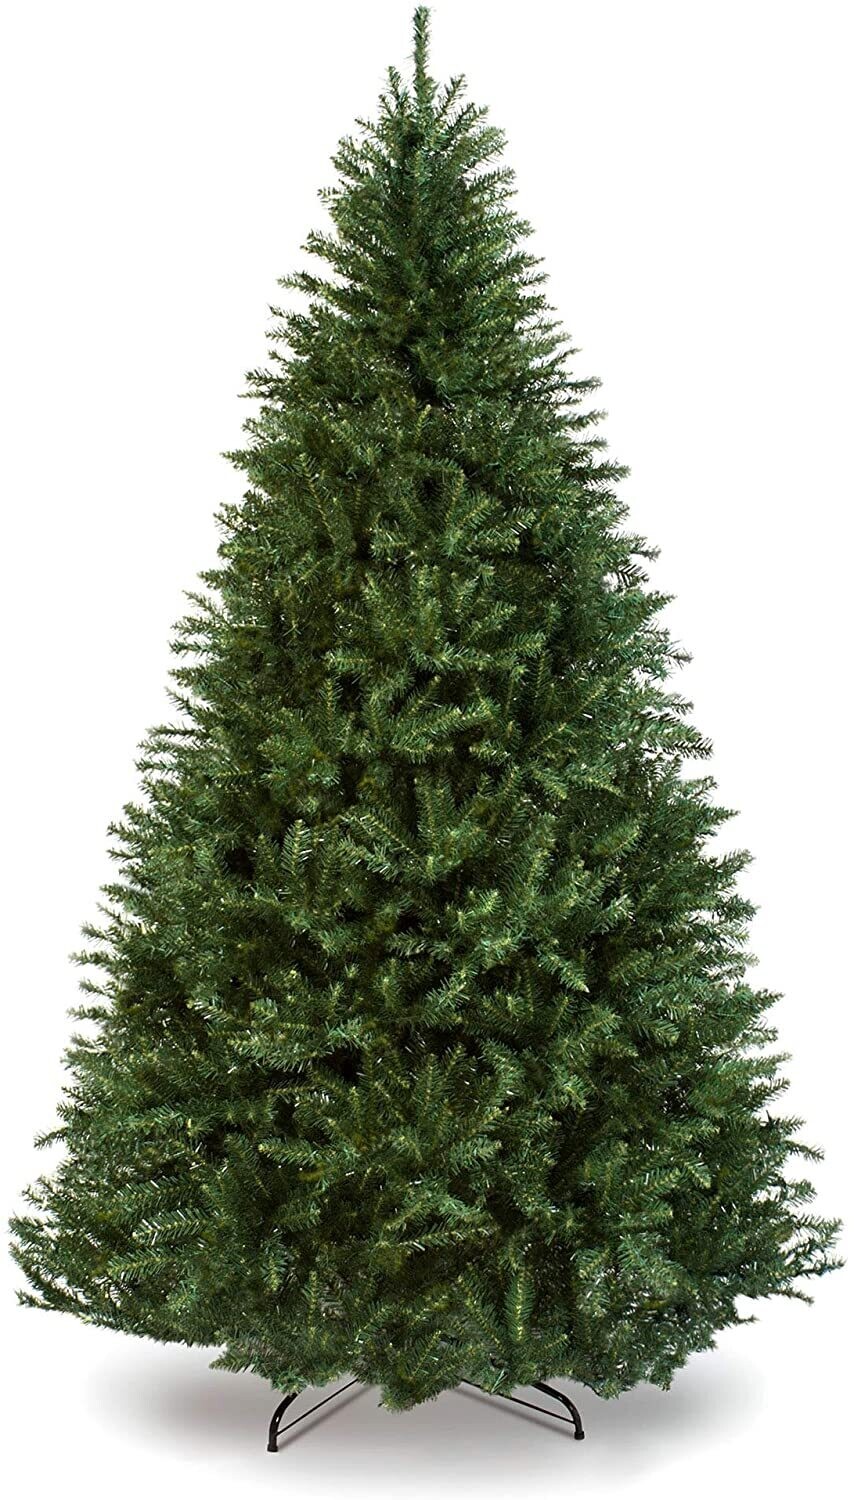 Christmas TREE GREEN 60CM 80T XM175